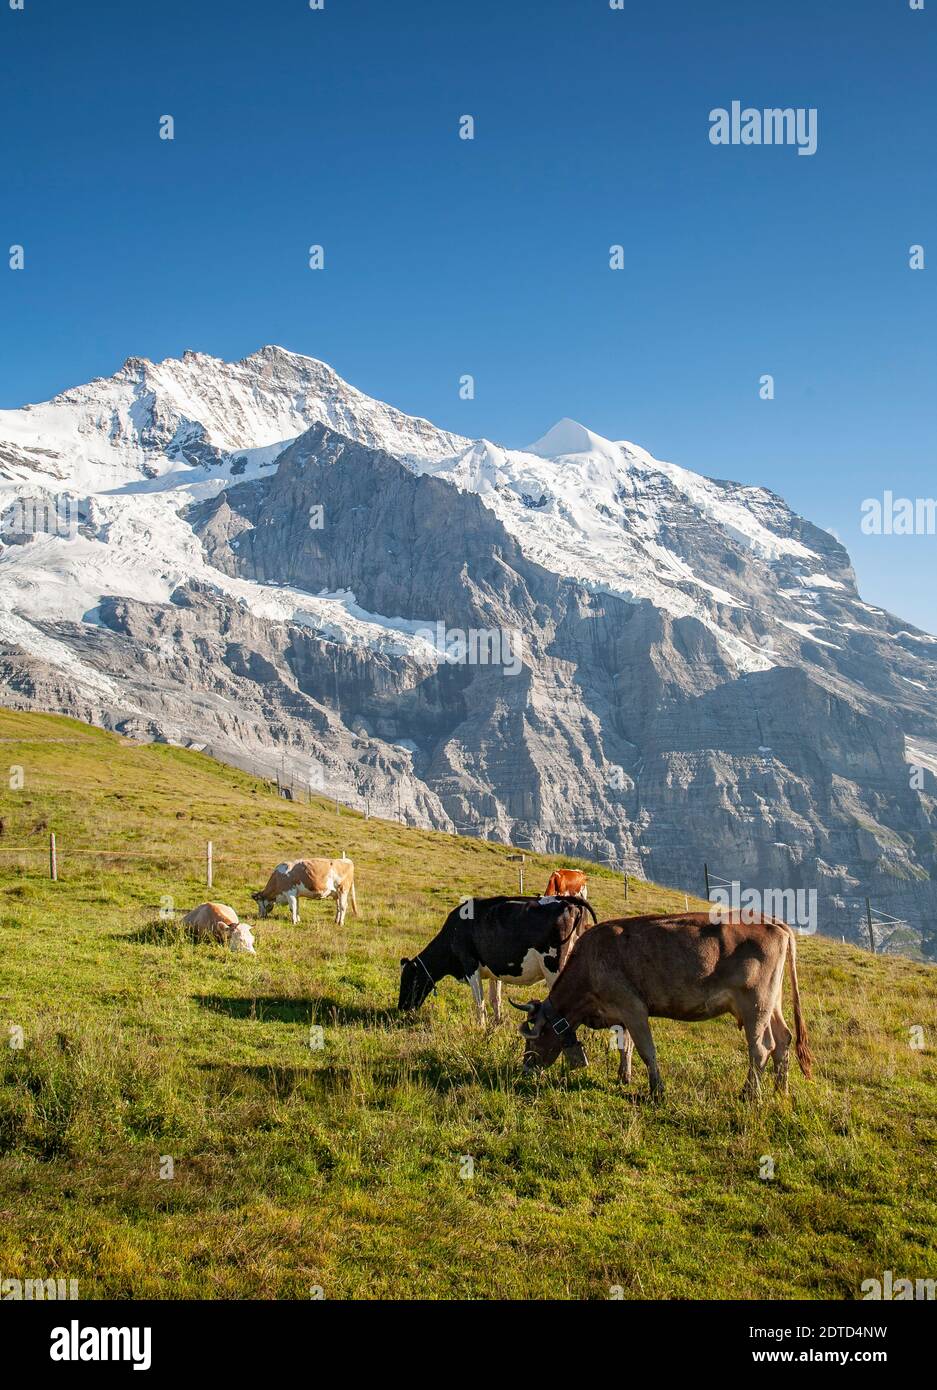 Suisse, canton de Berne, Berner Oberland, Kleine Sheidgg, vaches paissant dans les prairies alpines Banque D'Images